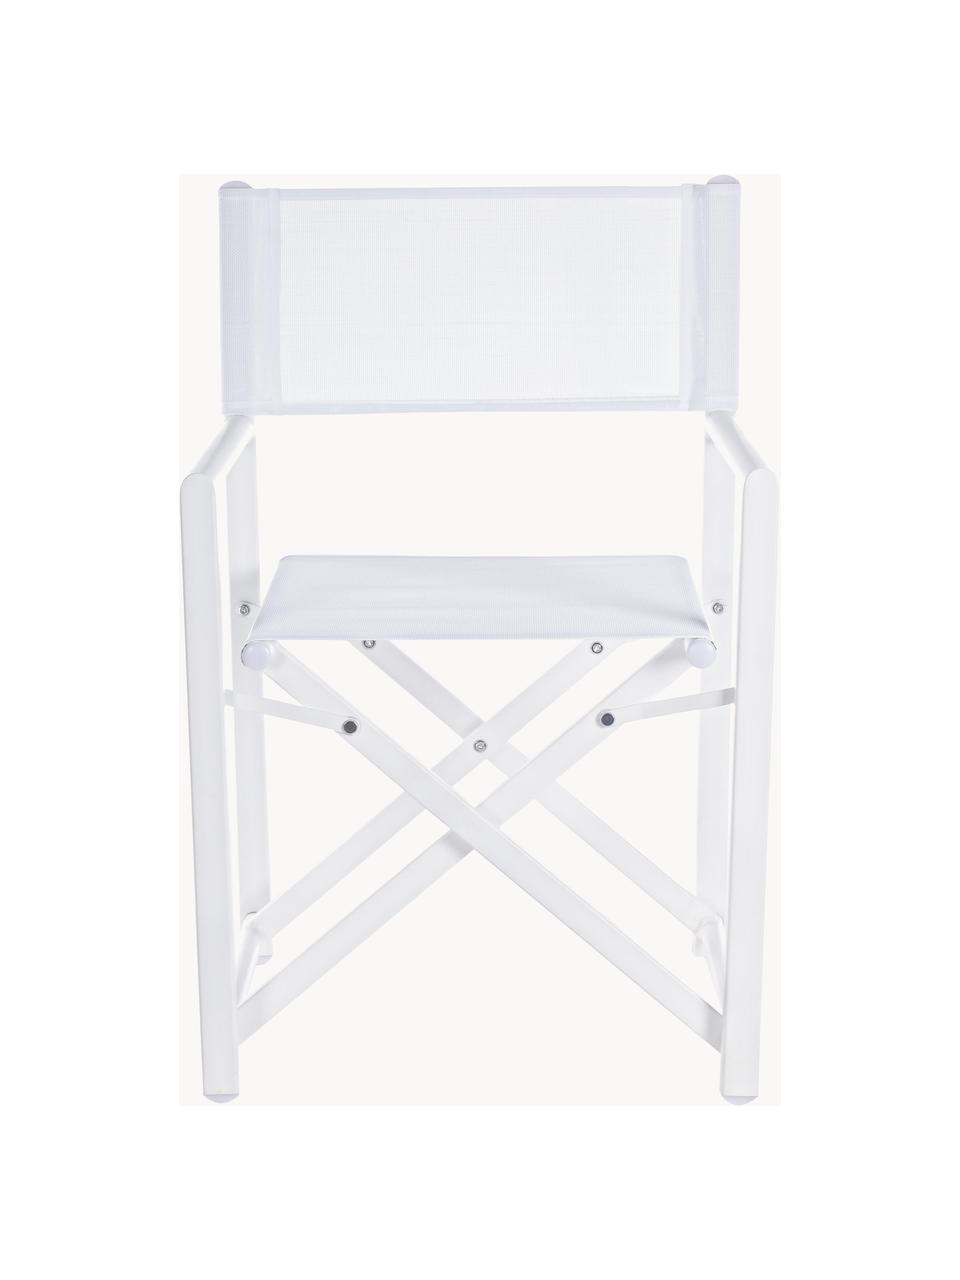 Klappbarer Gartenstuhl Taylor, Sitzfläche: Kunststoff (610 g/m²), Gestell: Aluminium, pulverbeschich, Weiß, B 48 x T 56 cm